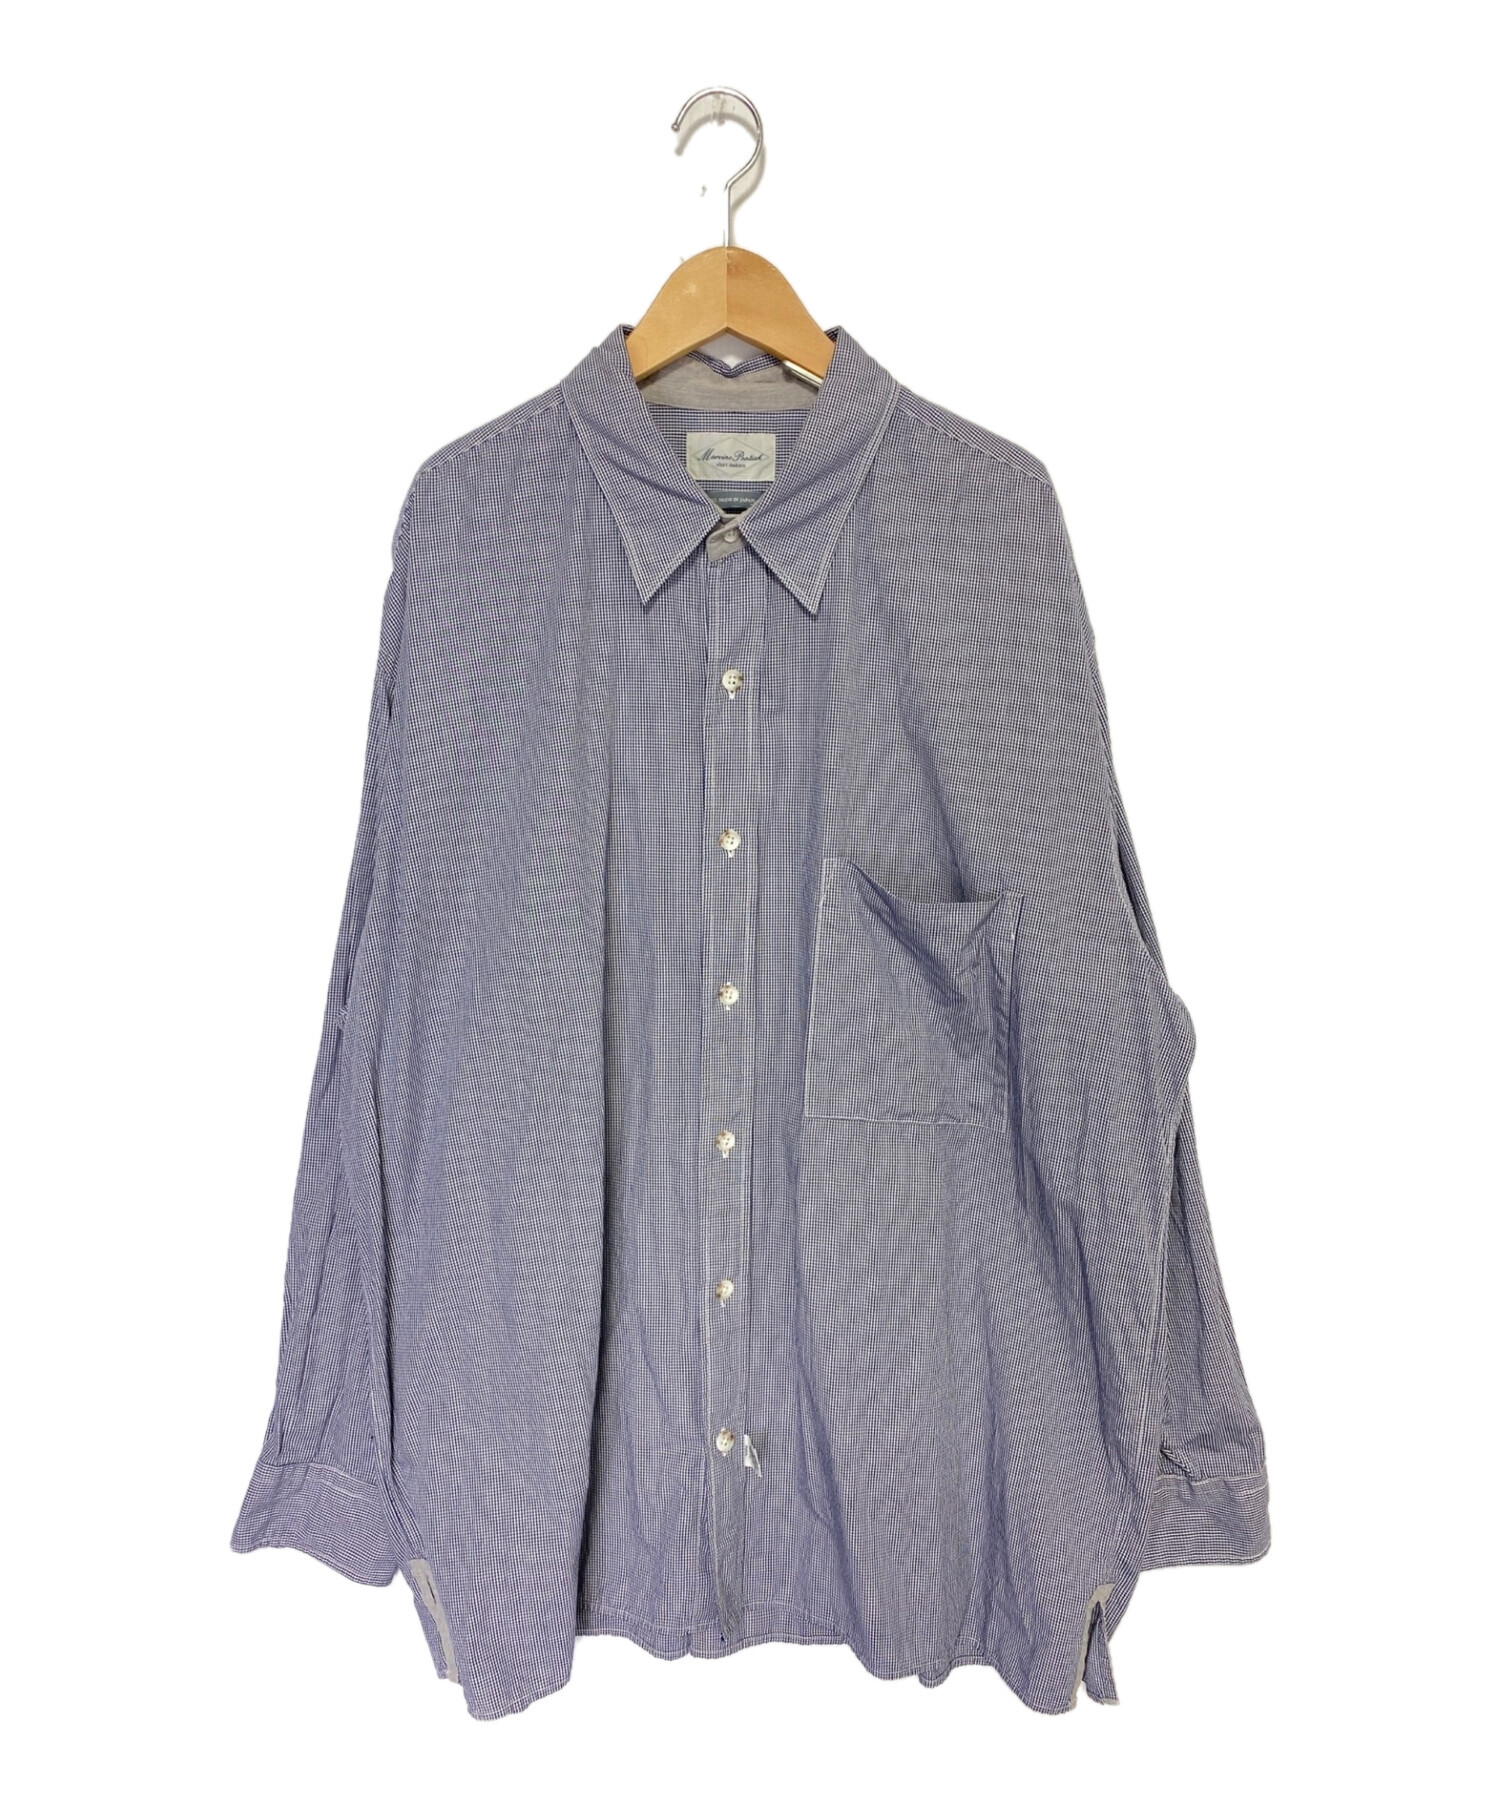 marvine pontiak shirt makers オープンカラーシャツ - ファッション